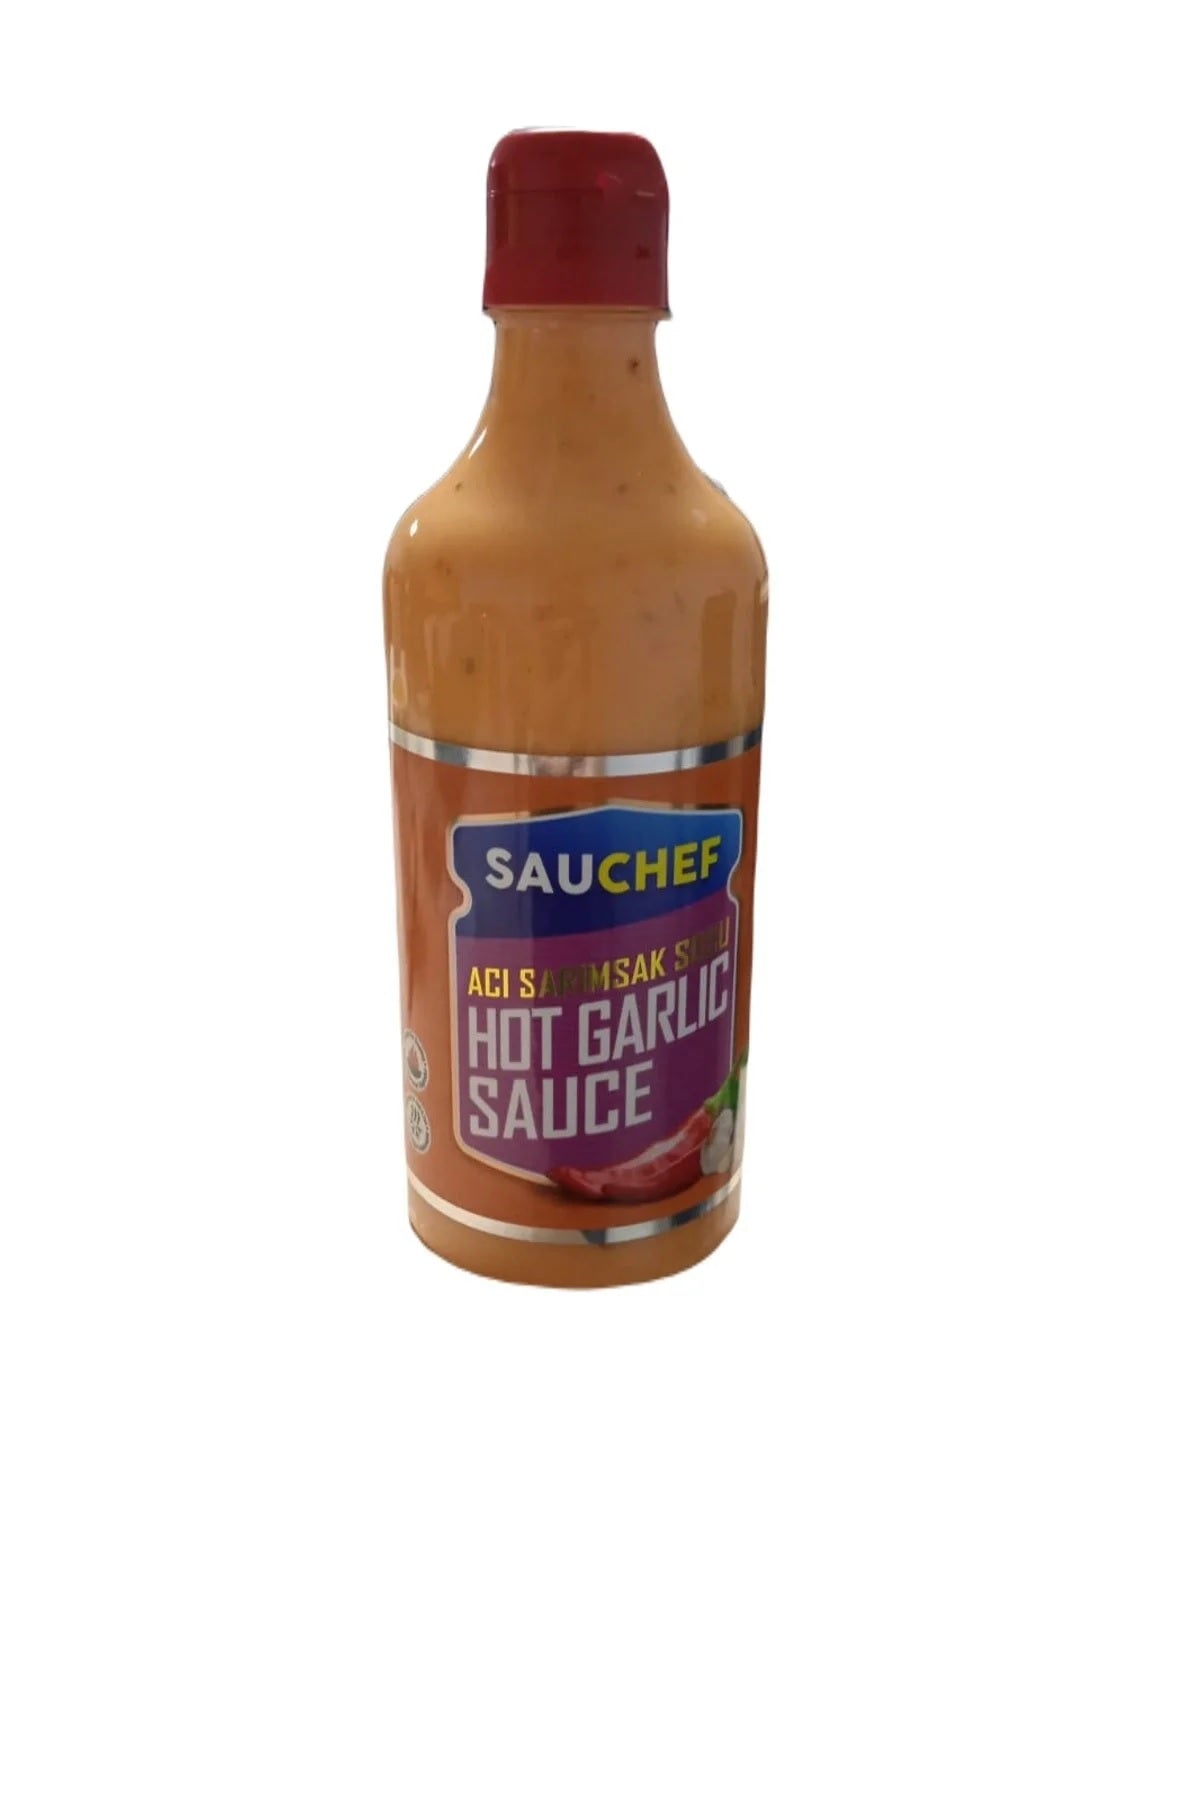 Sauchef hot garlic sauce 500g